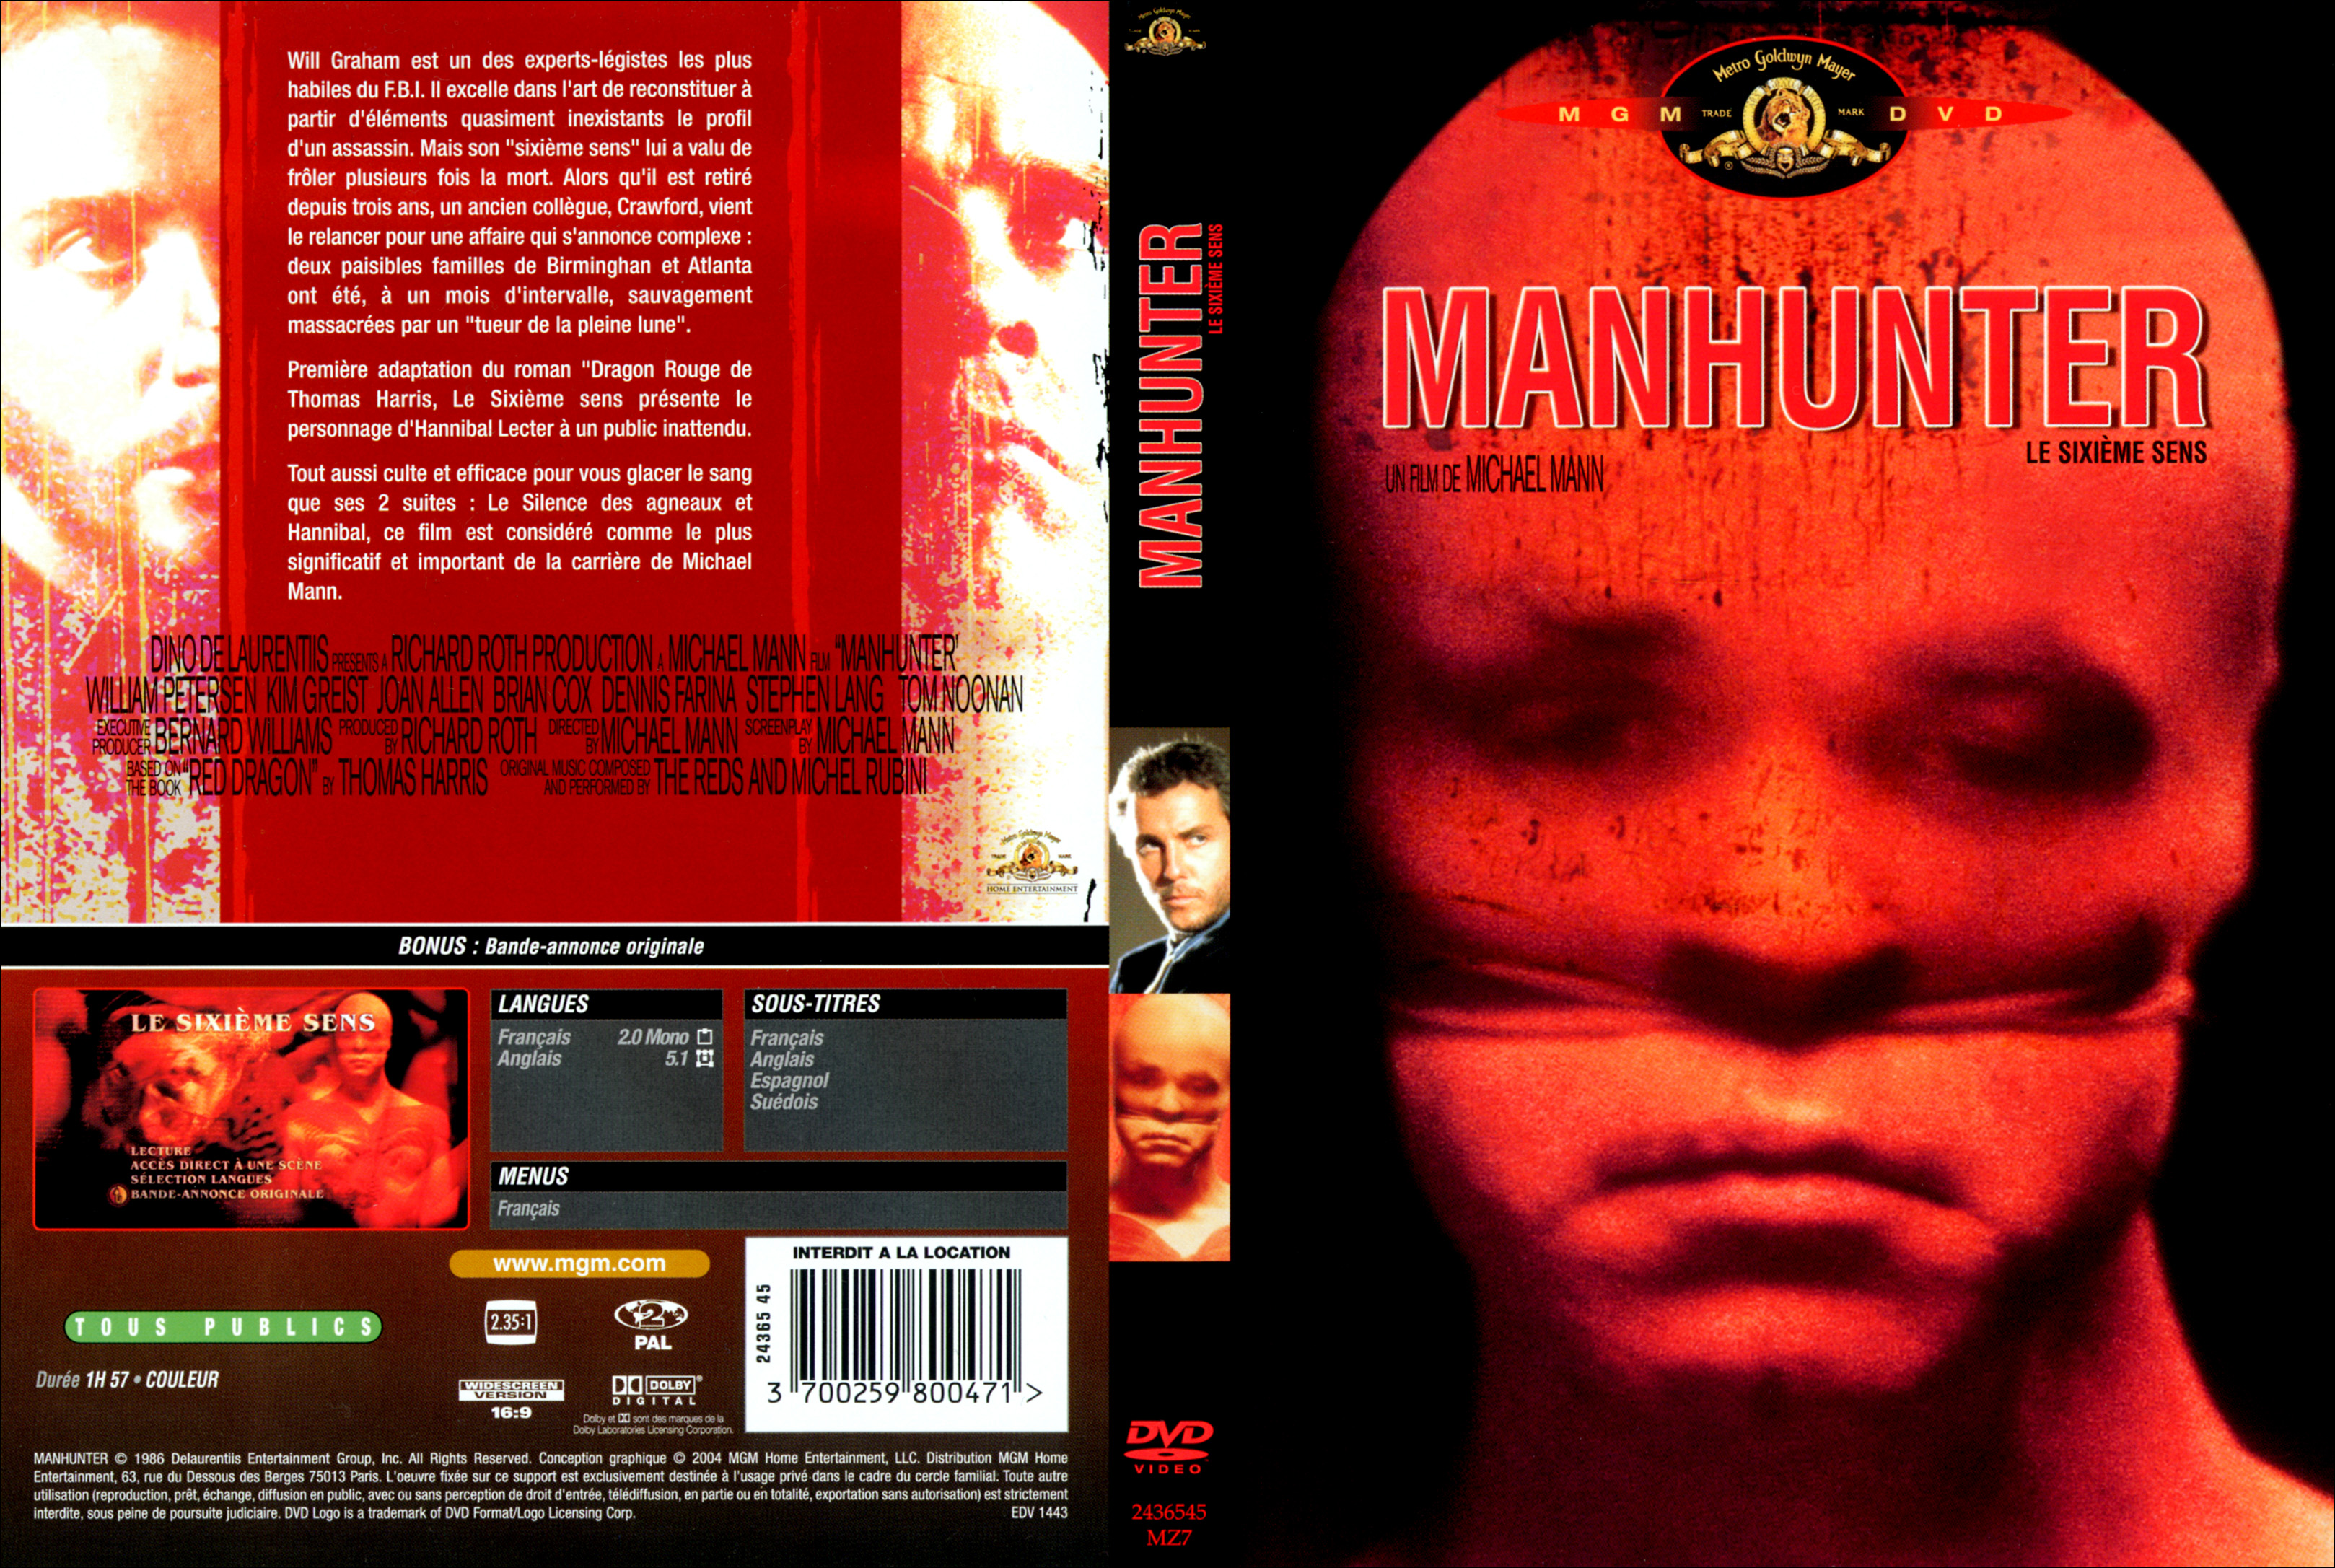 Jaquette DVD Manhunter - Le sixime sens